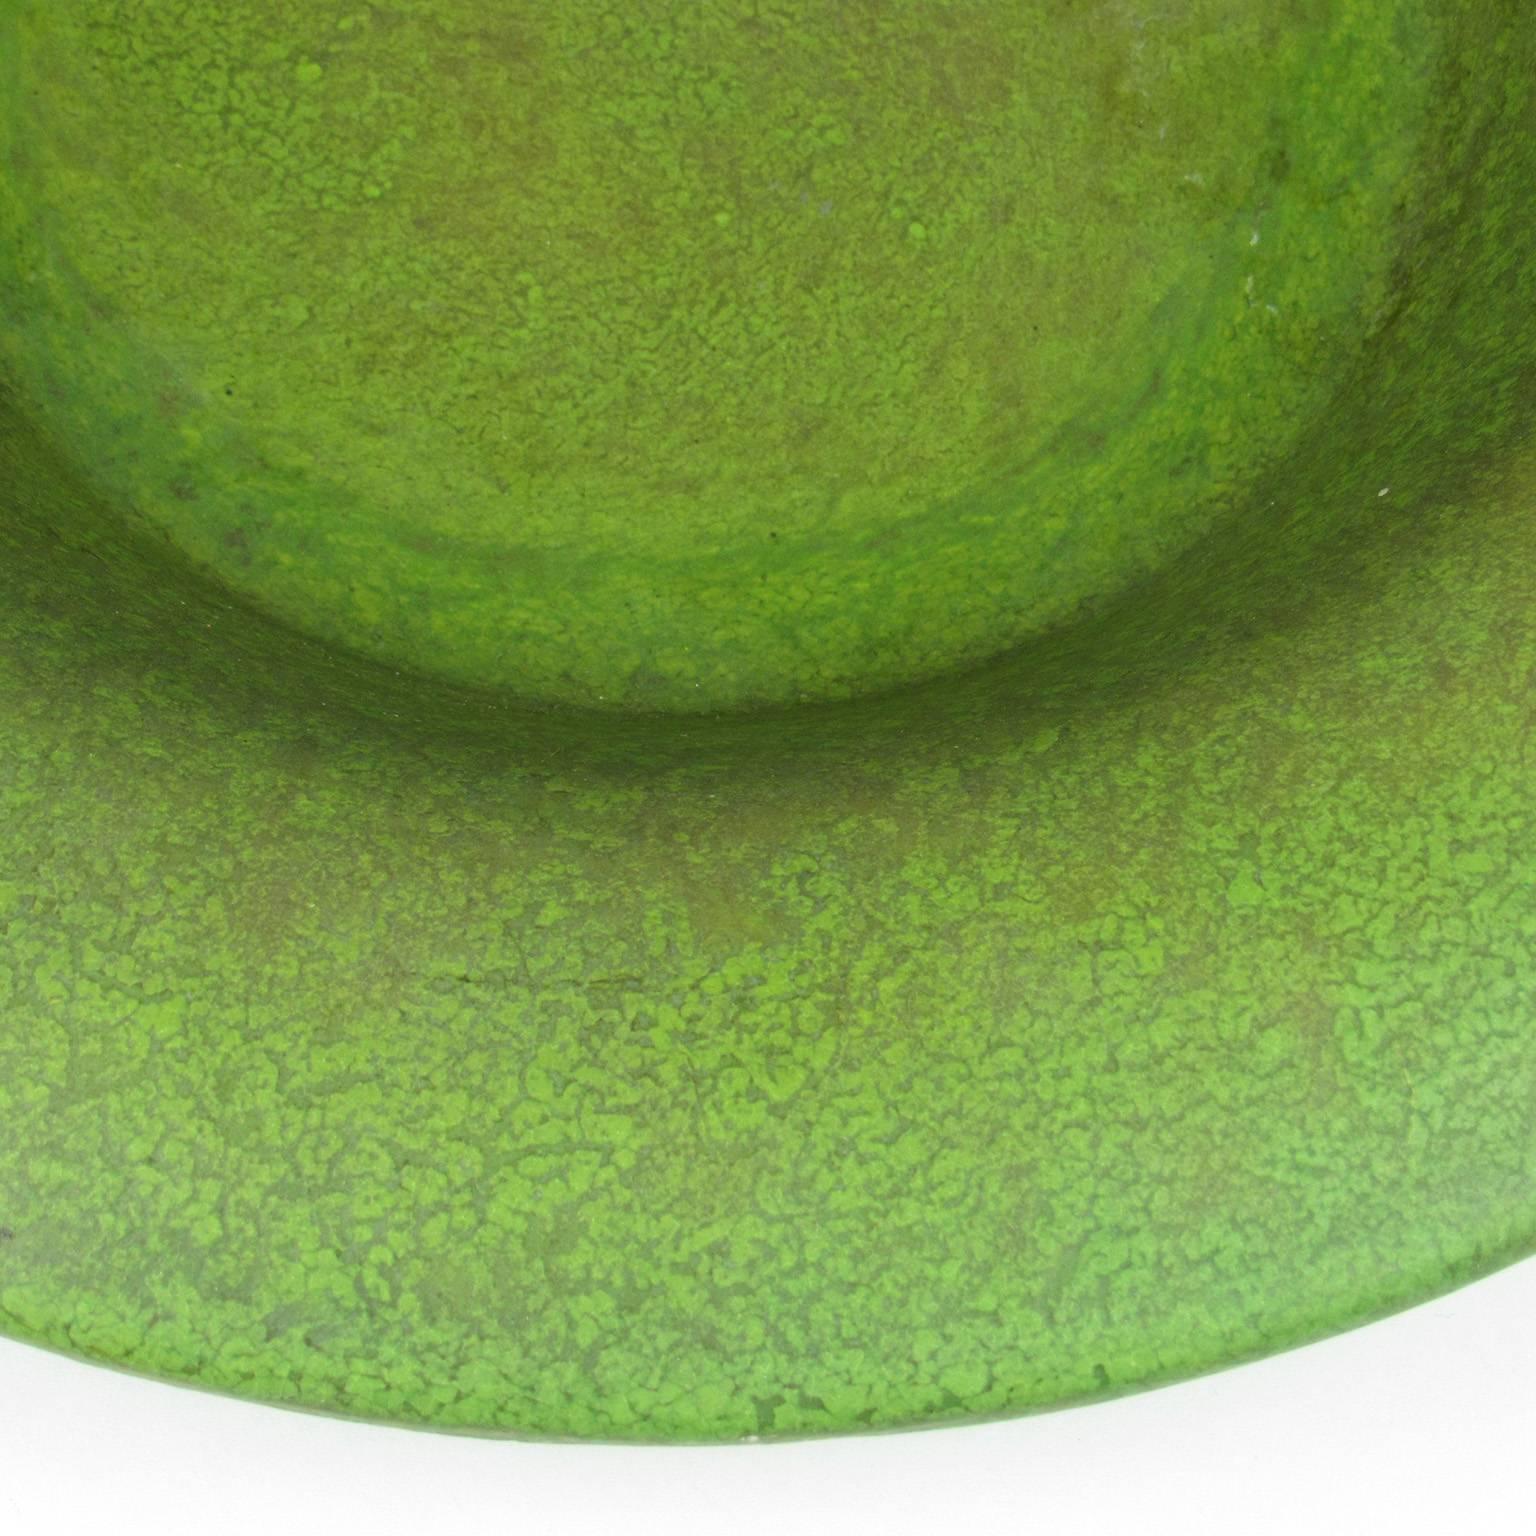 shallow ceramic bowl